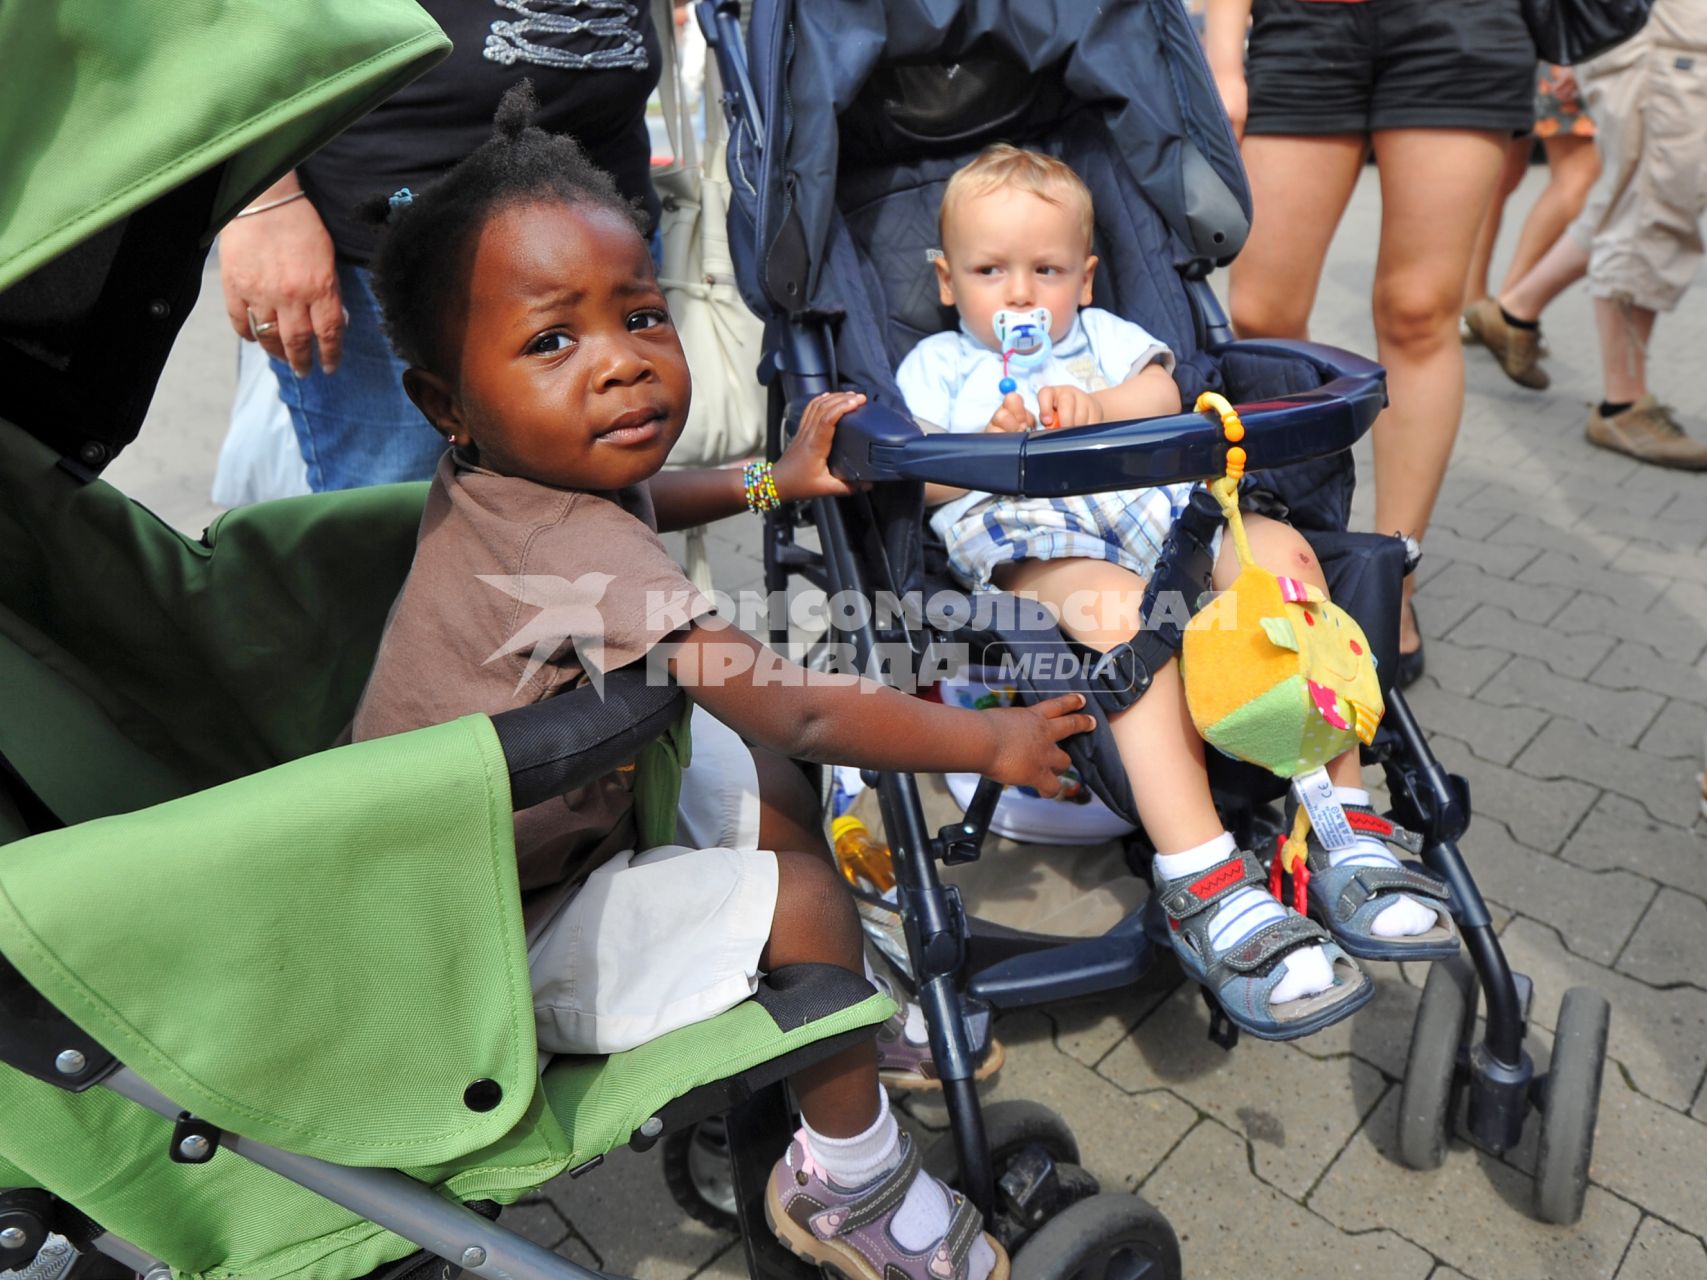 Порт города Бремерхафена. На снимке: дети в колясках.